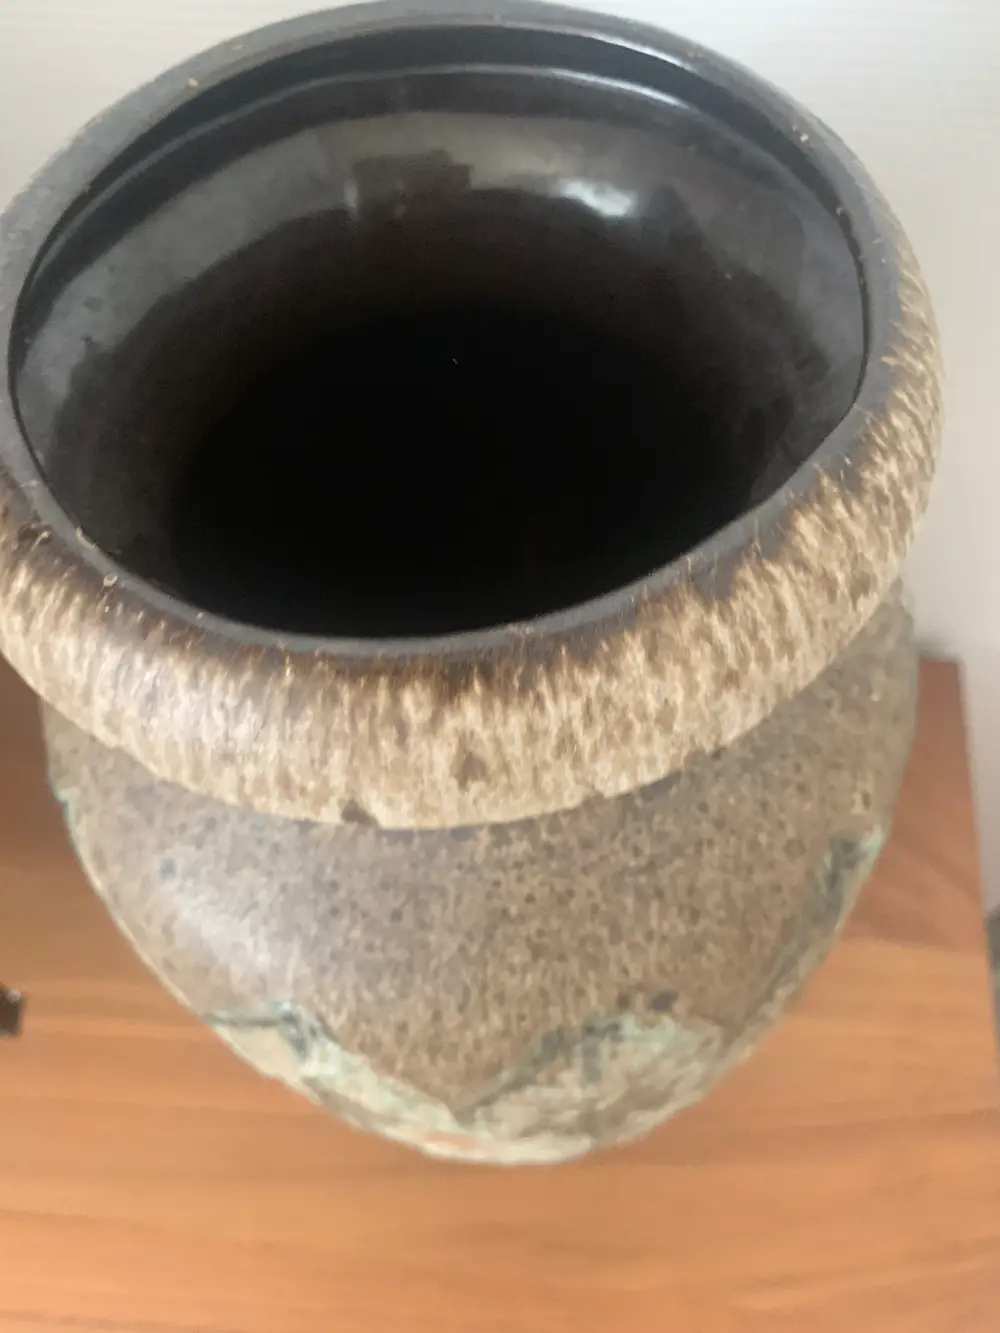 Tysk keramik Gulvvase